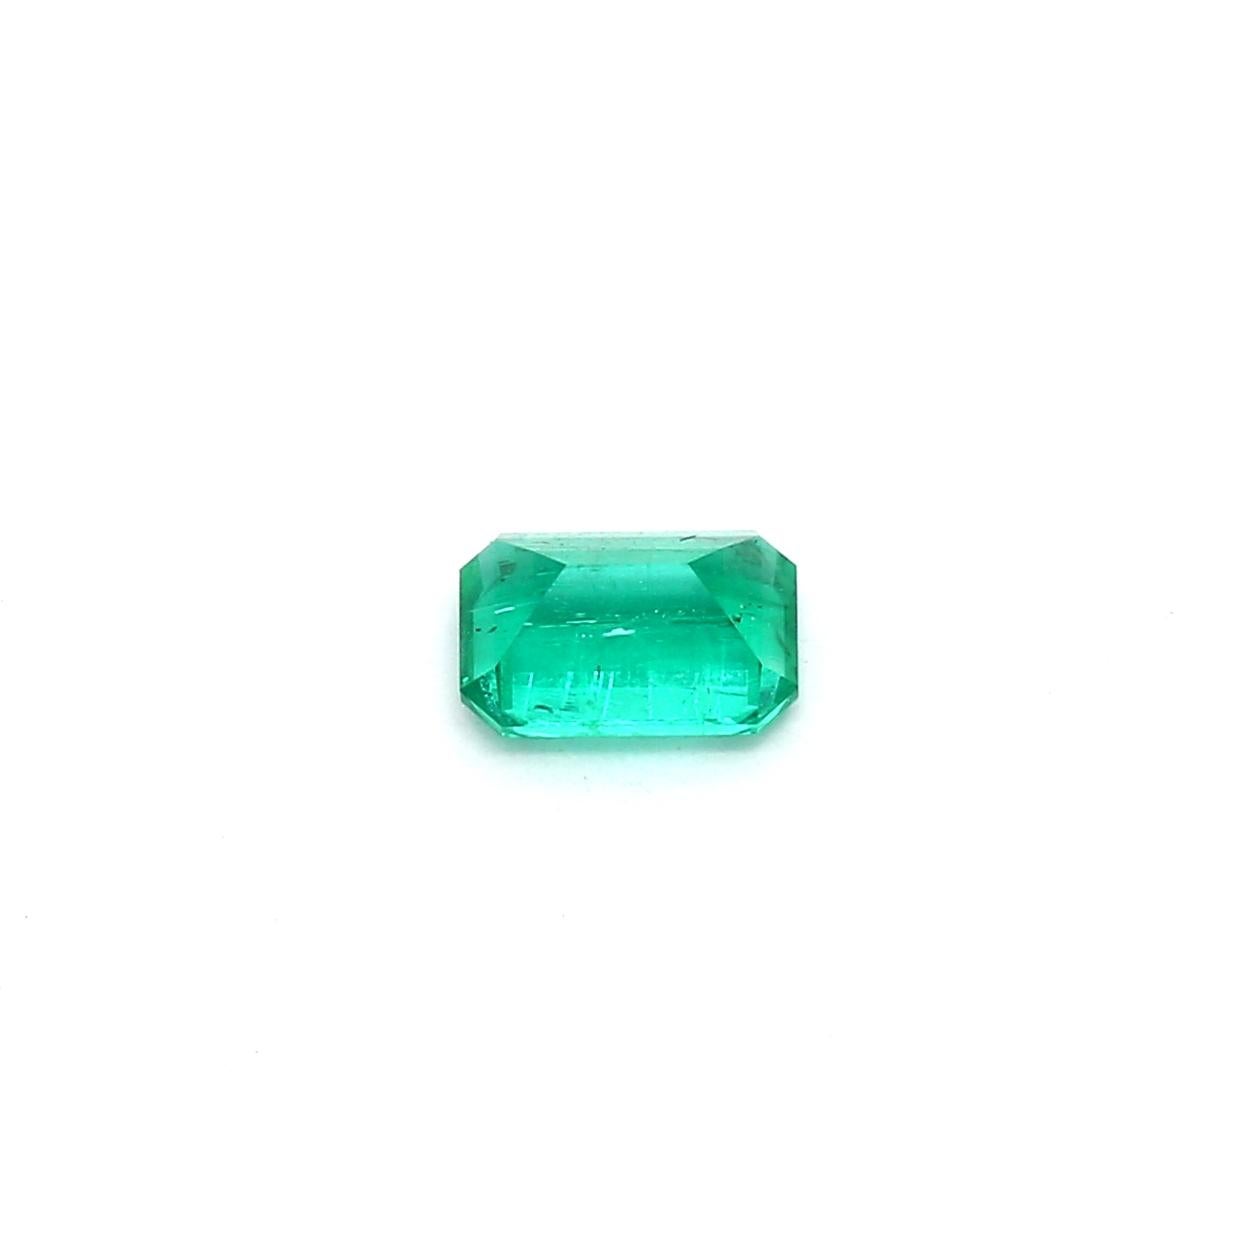 Modern Emerald Cut Russian Emerald Ring Gem 0.51 Carat Weight For Sale